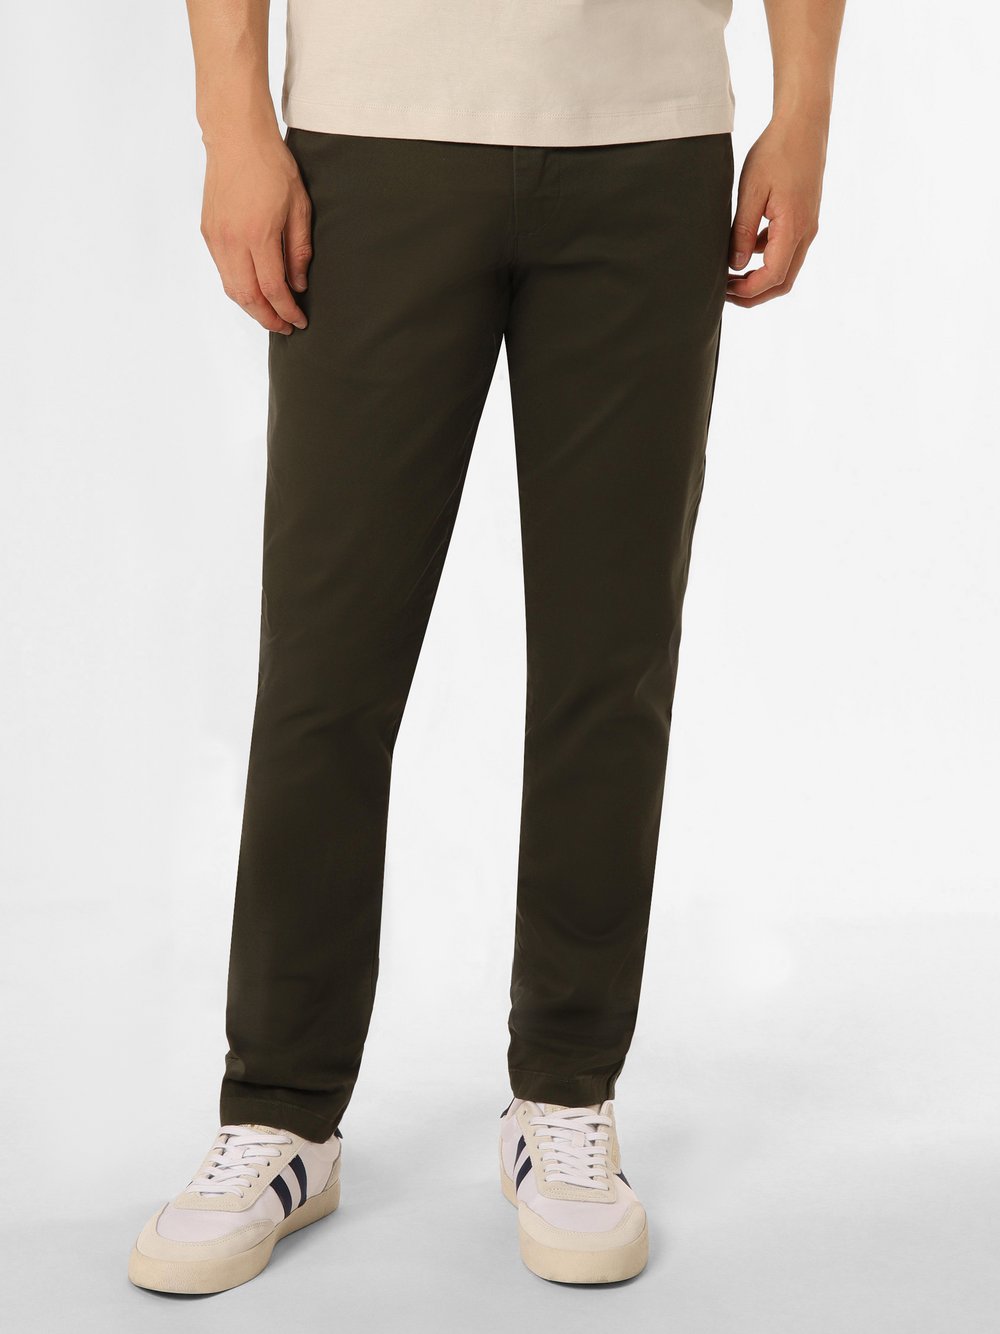 Selected - Spodnie męskie  SLH175-Slim New Miles, zielony